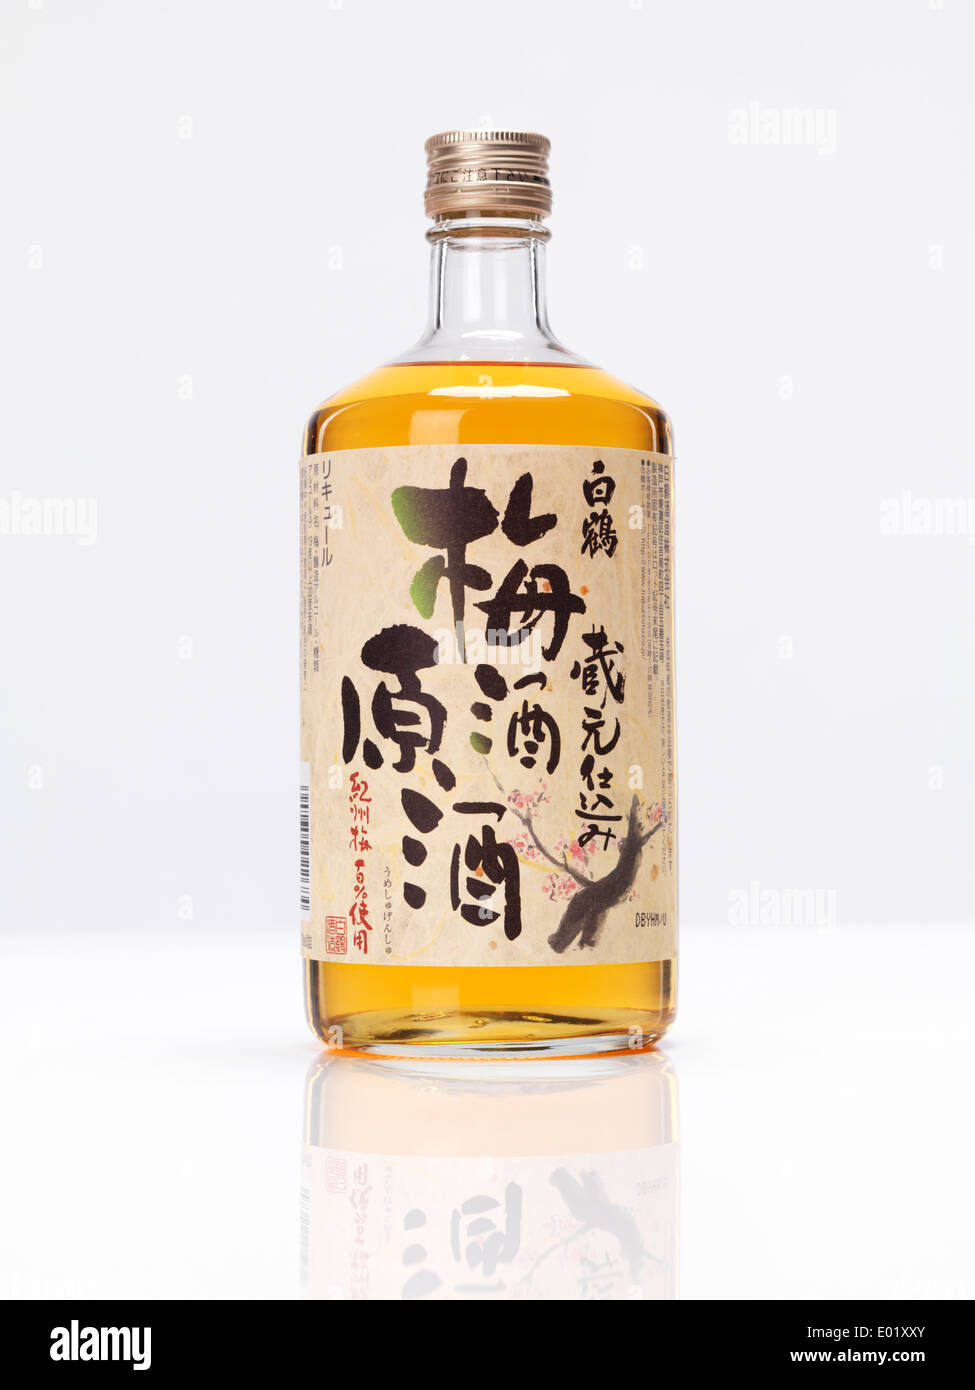 Bottle of premium Japanese White crane plum wine Umeshu sake isolated on white background Stock Photo